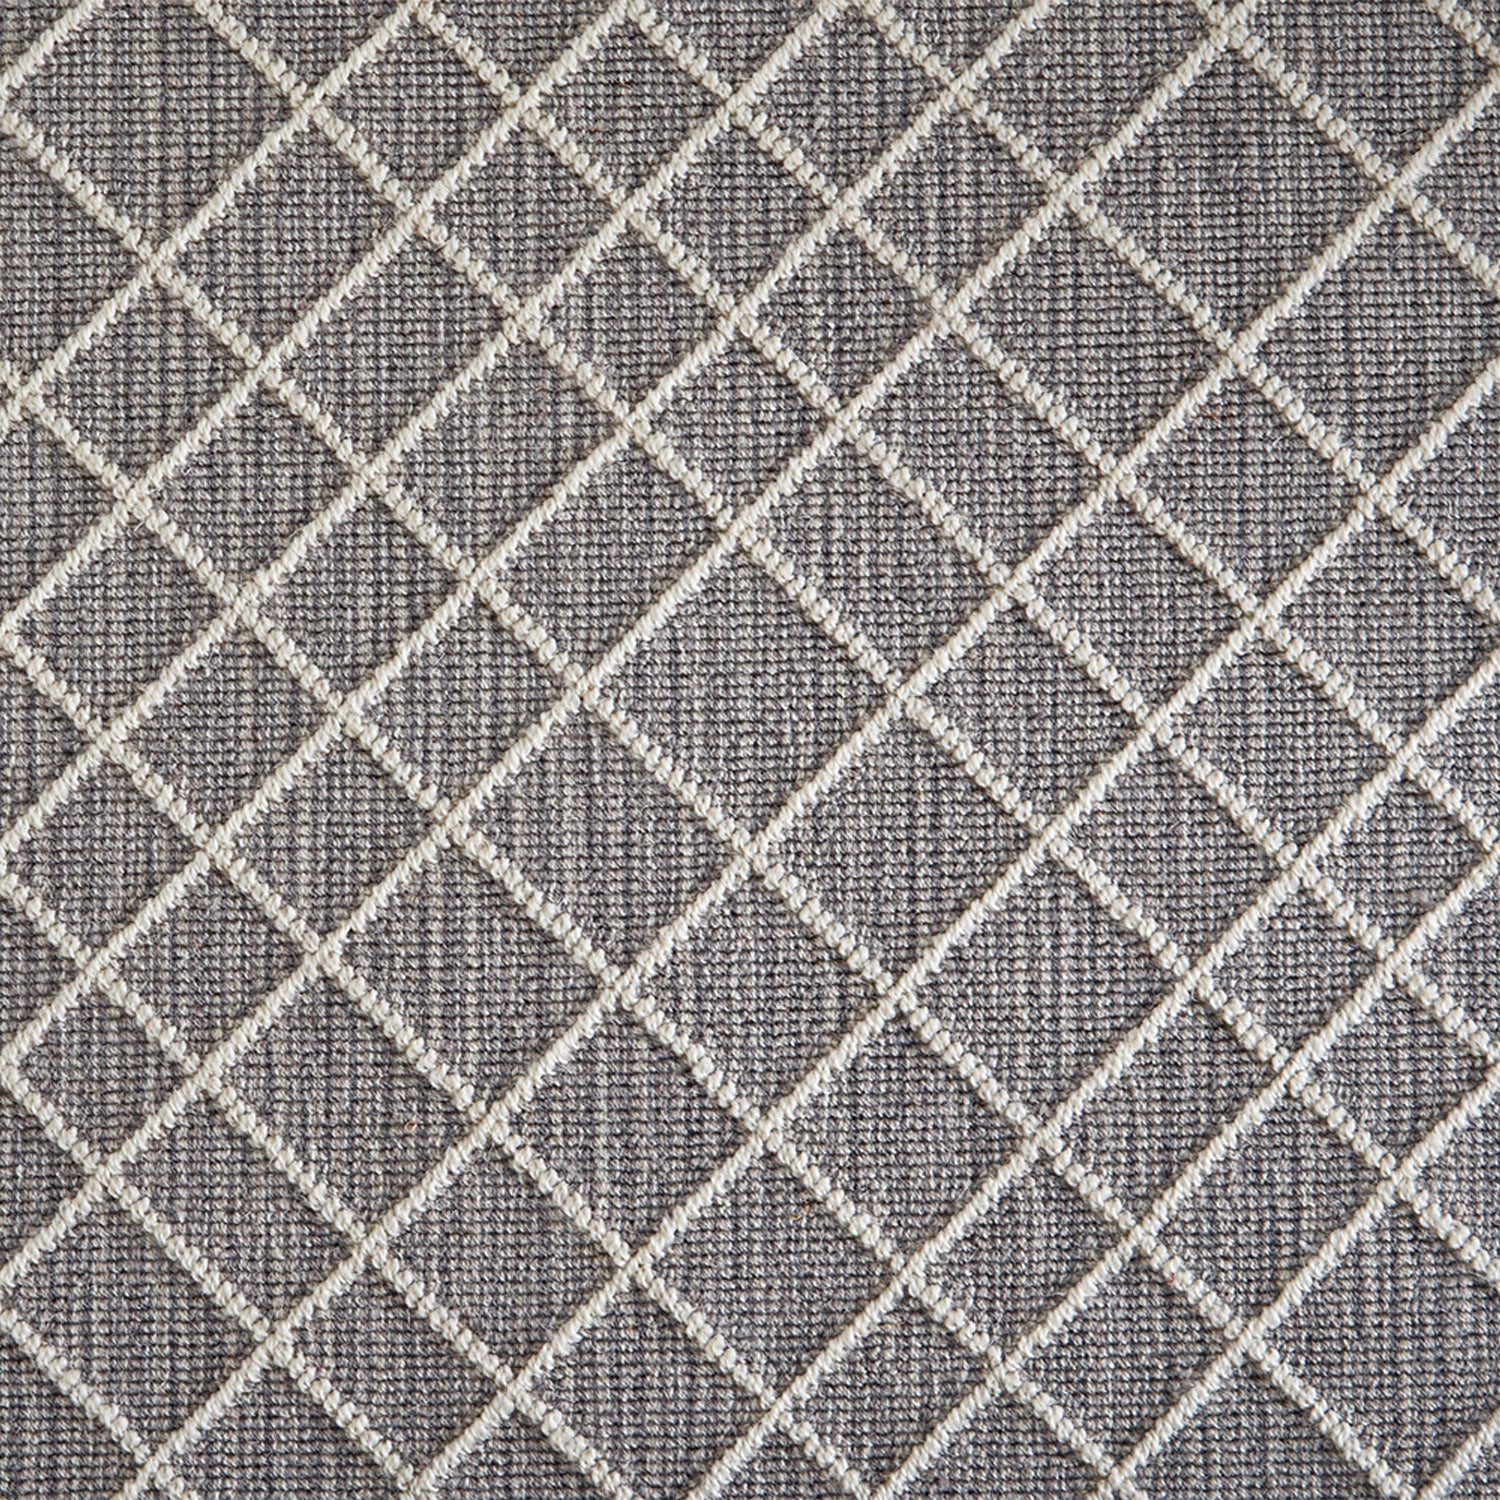 Wool-blend broadloom carpet swatch in a dimensional lattice print in cream on a mottled gray field.